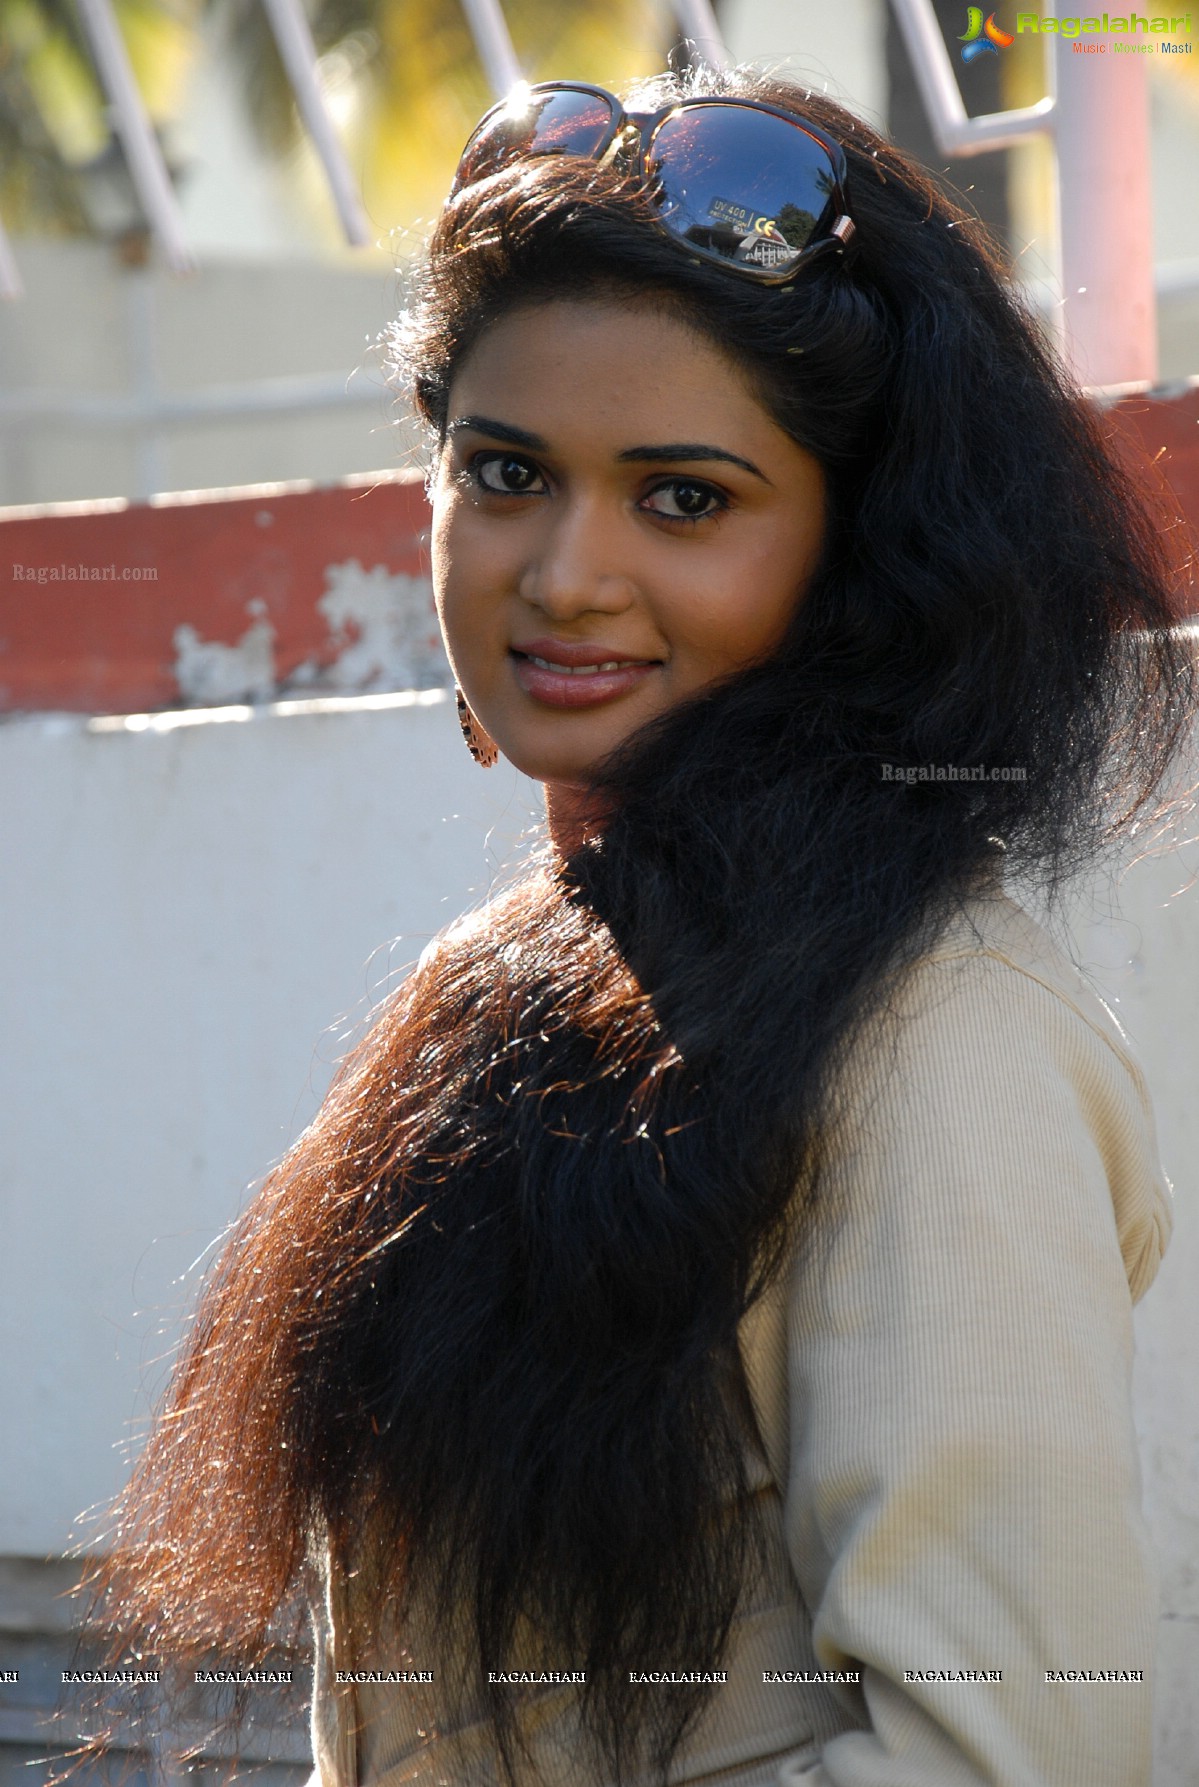 Sunitha Marasiar